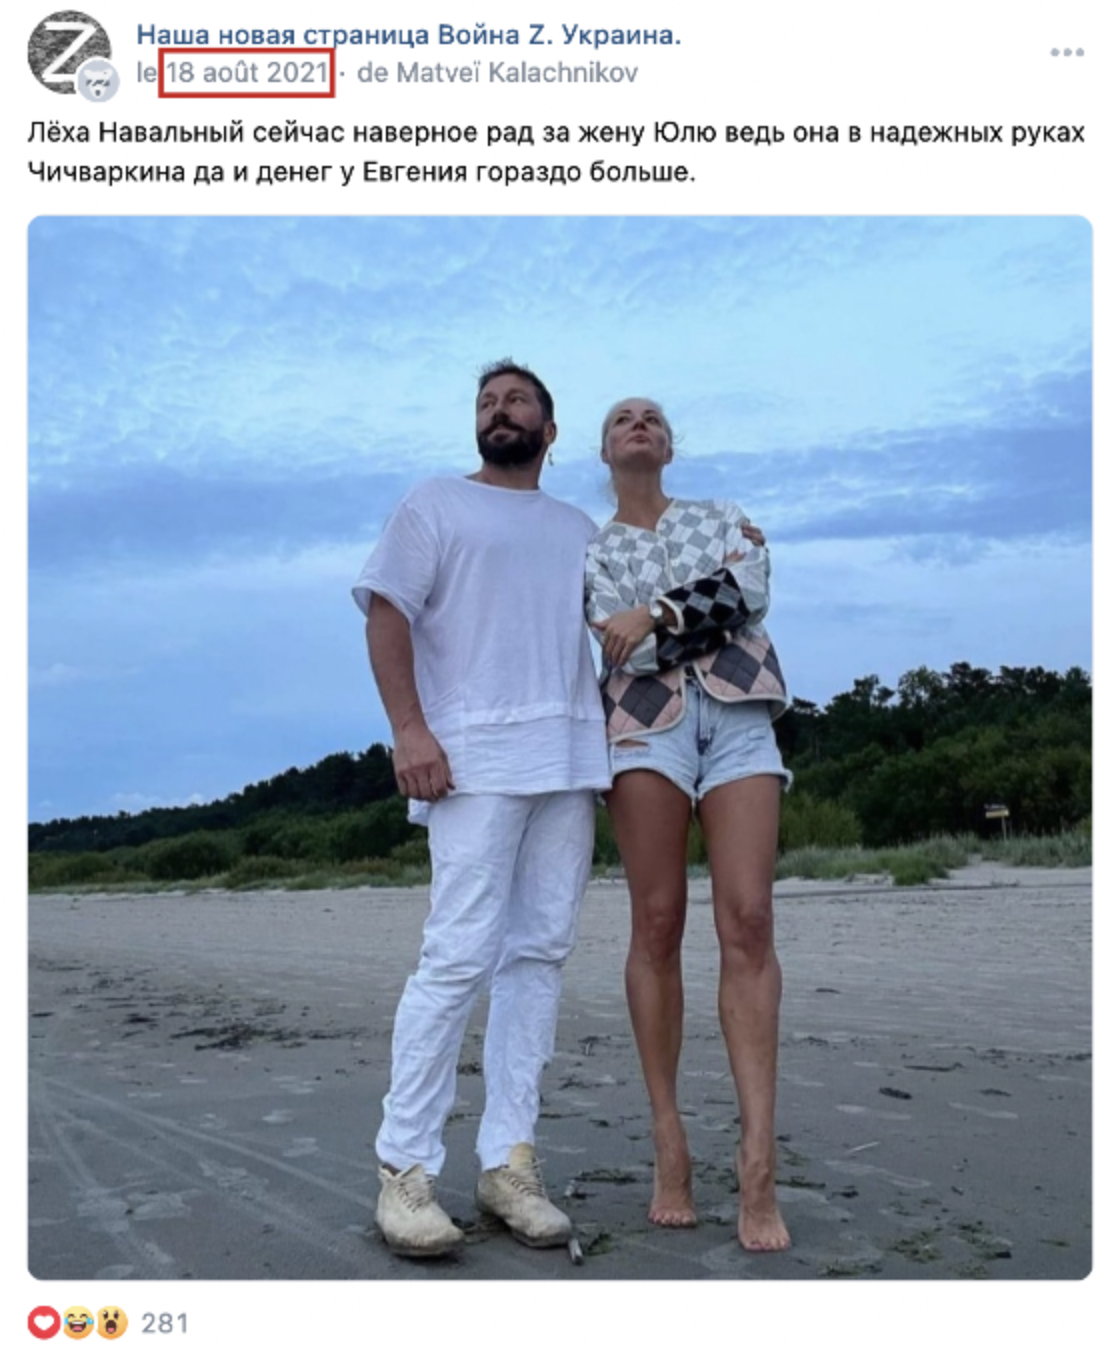 Dies ist ein Screenshot eines Fotos von Navalnaya und Chichvarkin am Strand, veröffentlicht am 18. August 2021 auf Vkontakte.